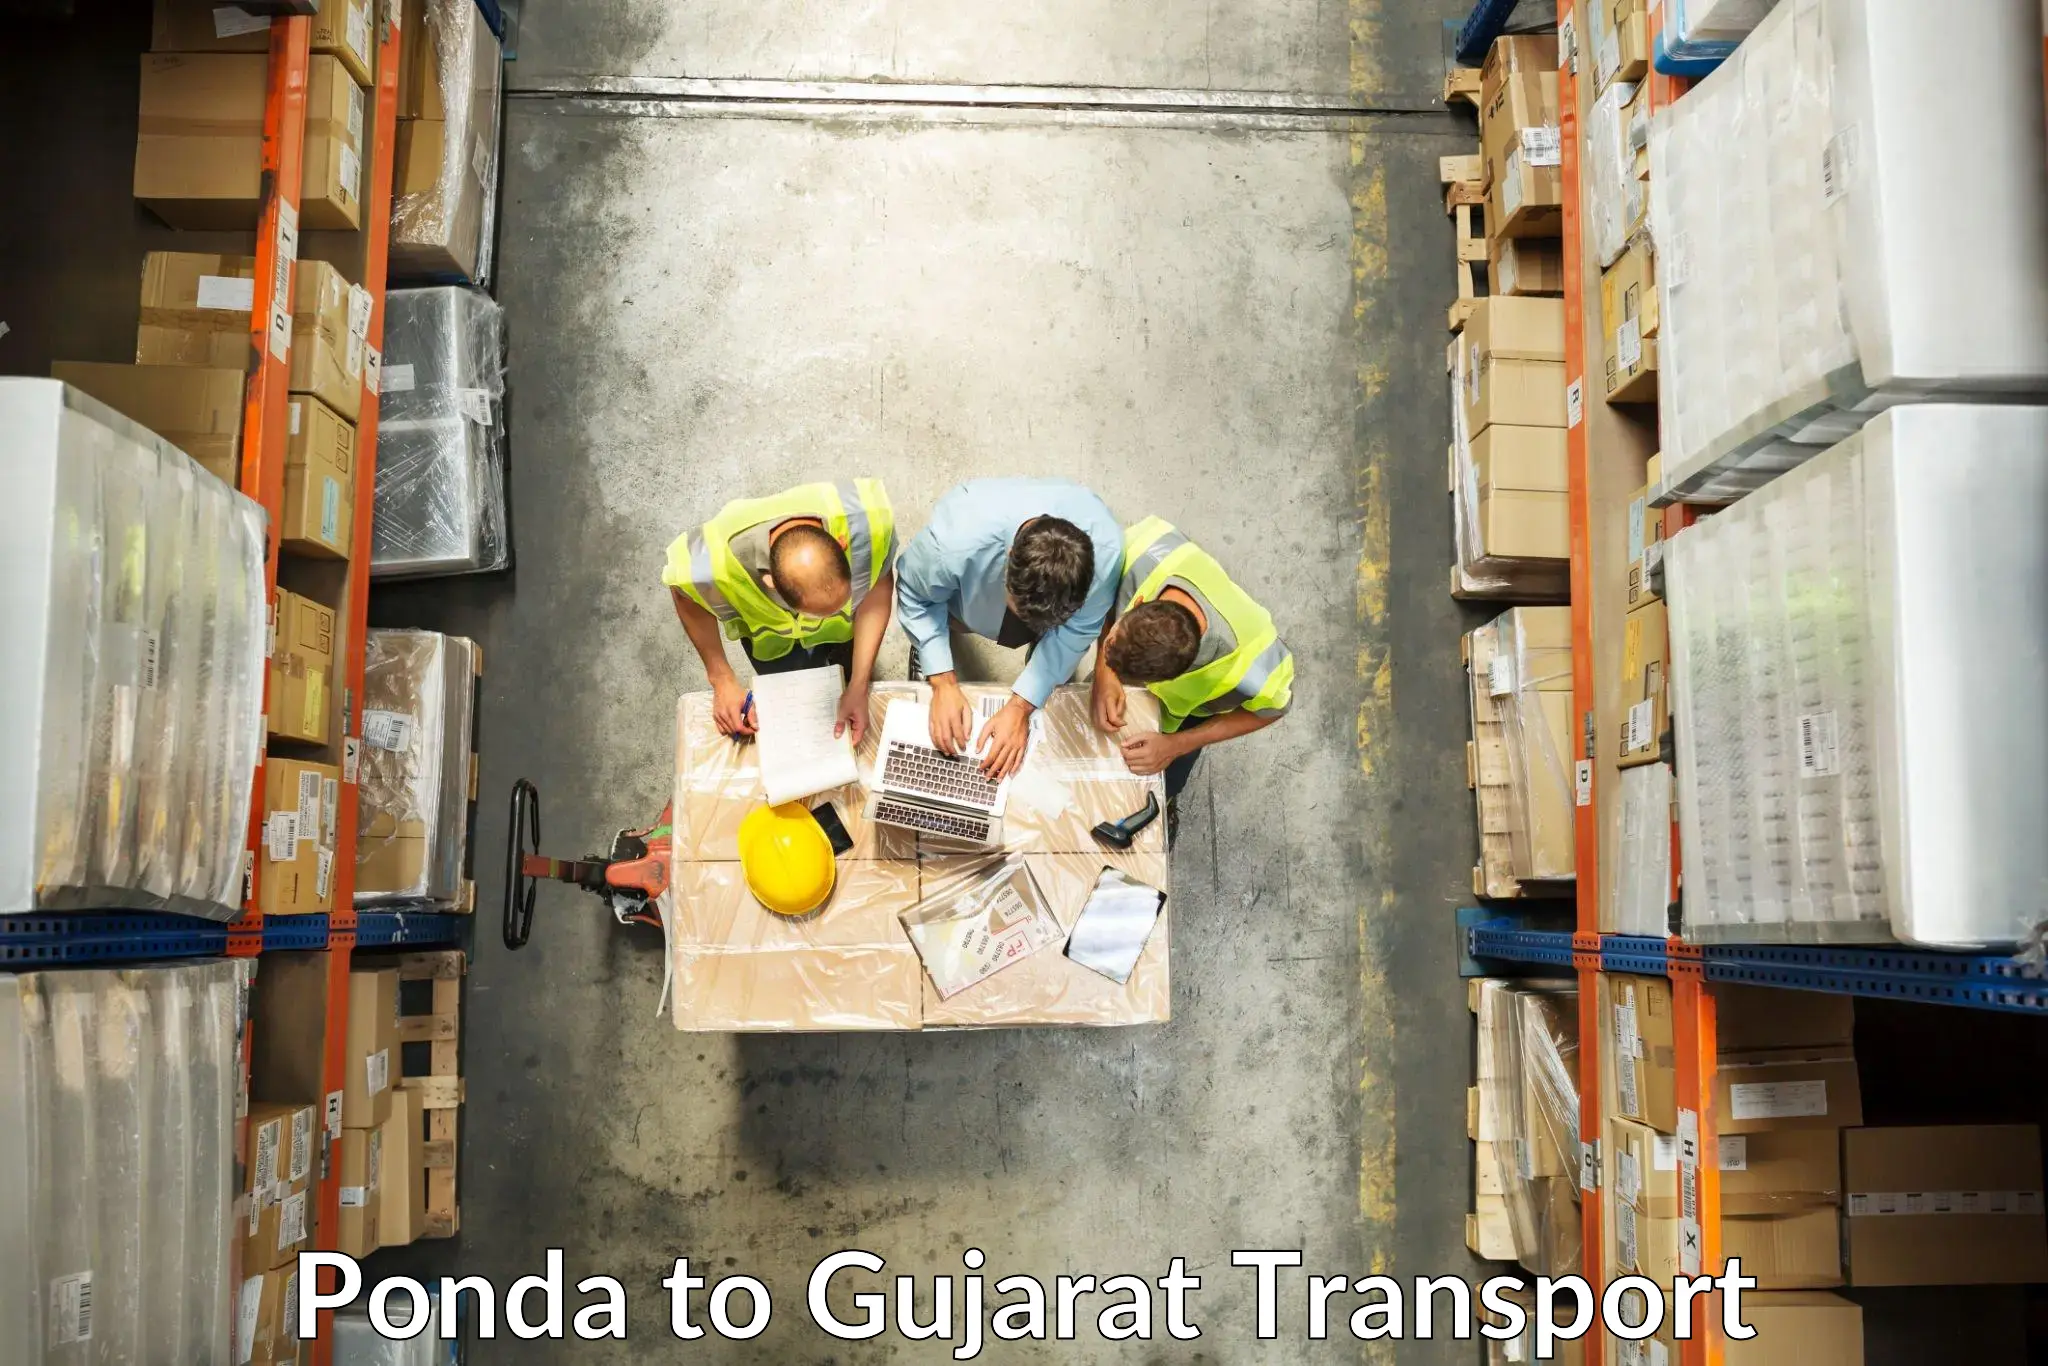 Container transport service Ponda to Dahej